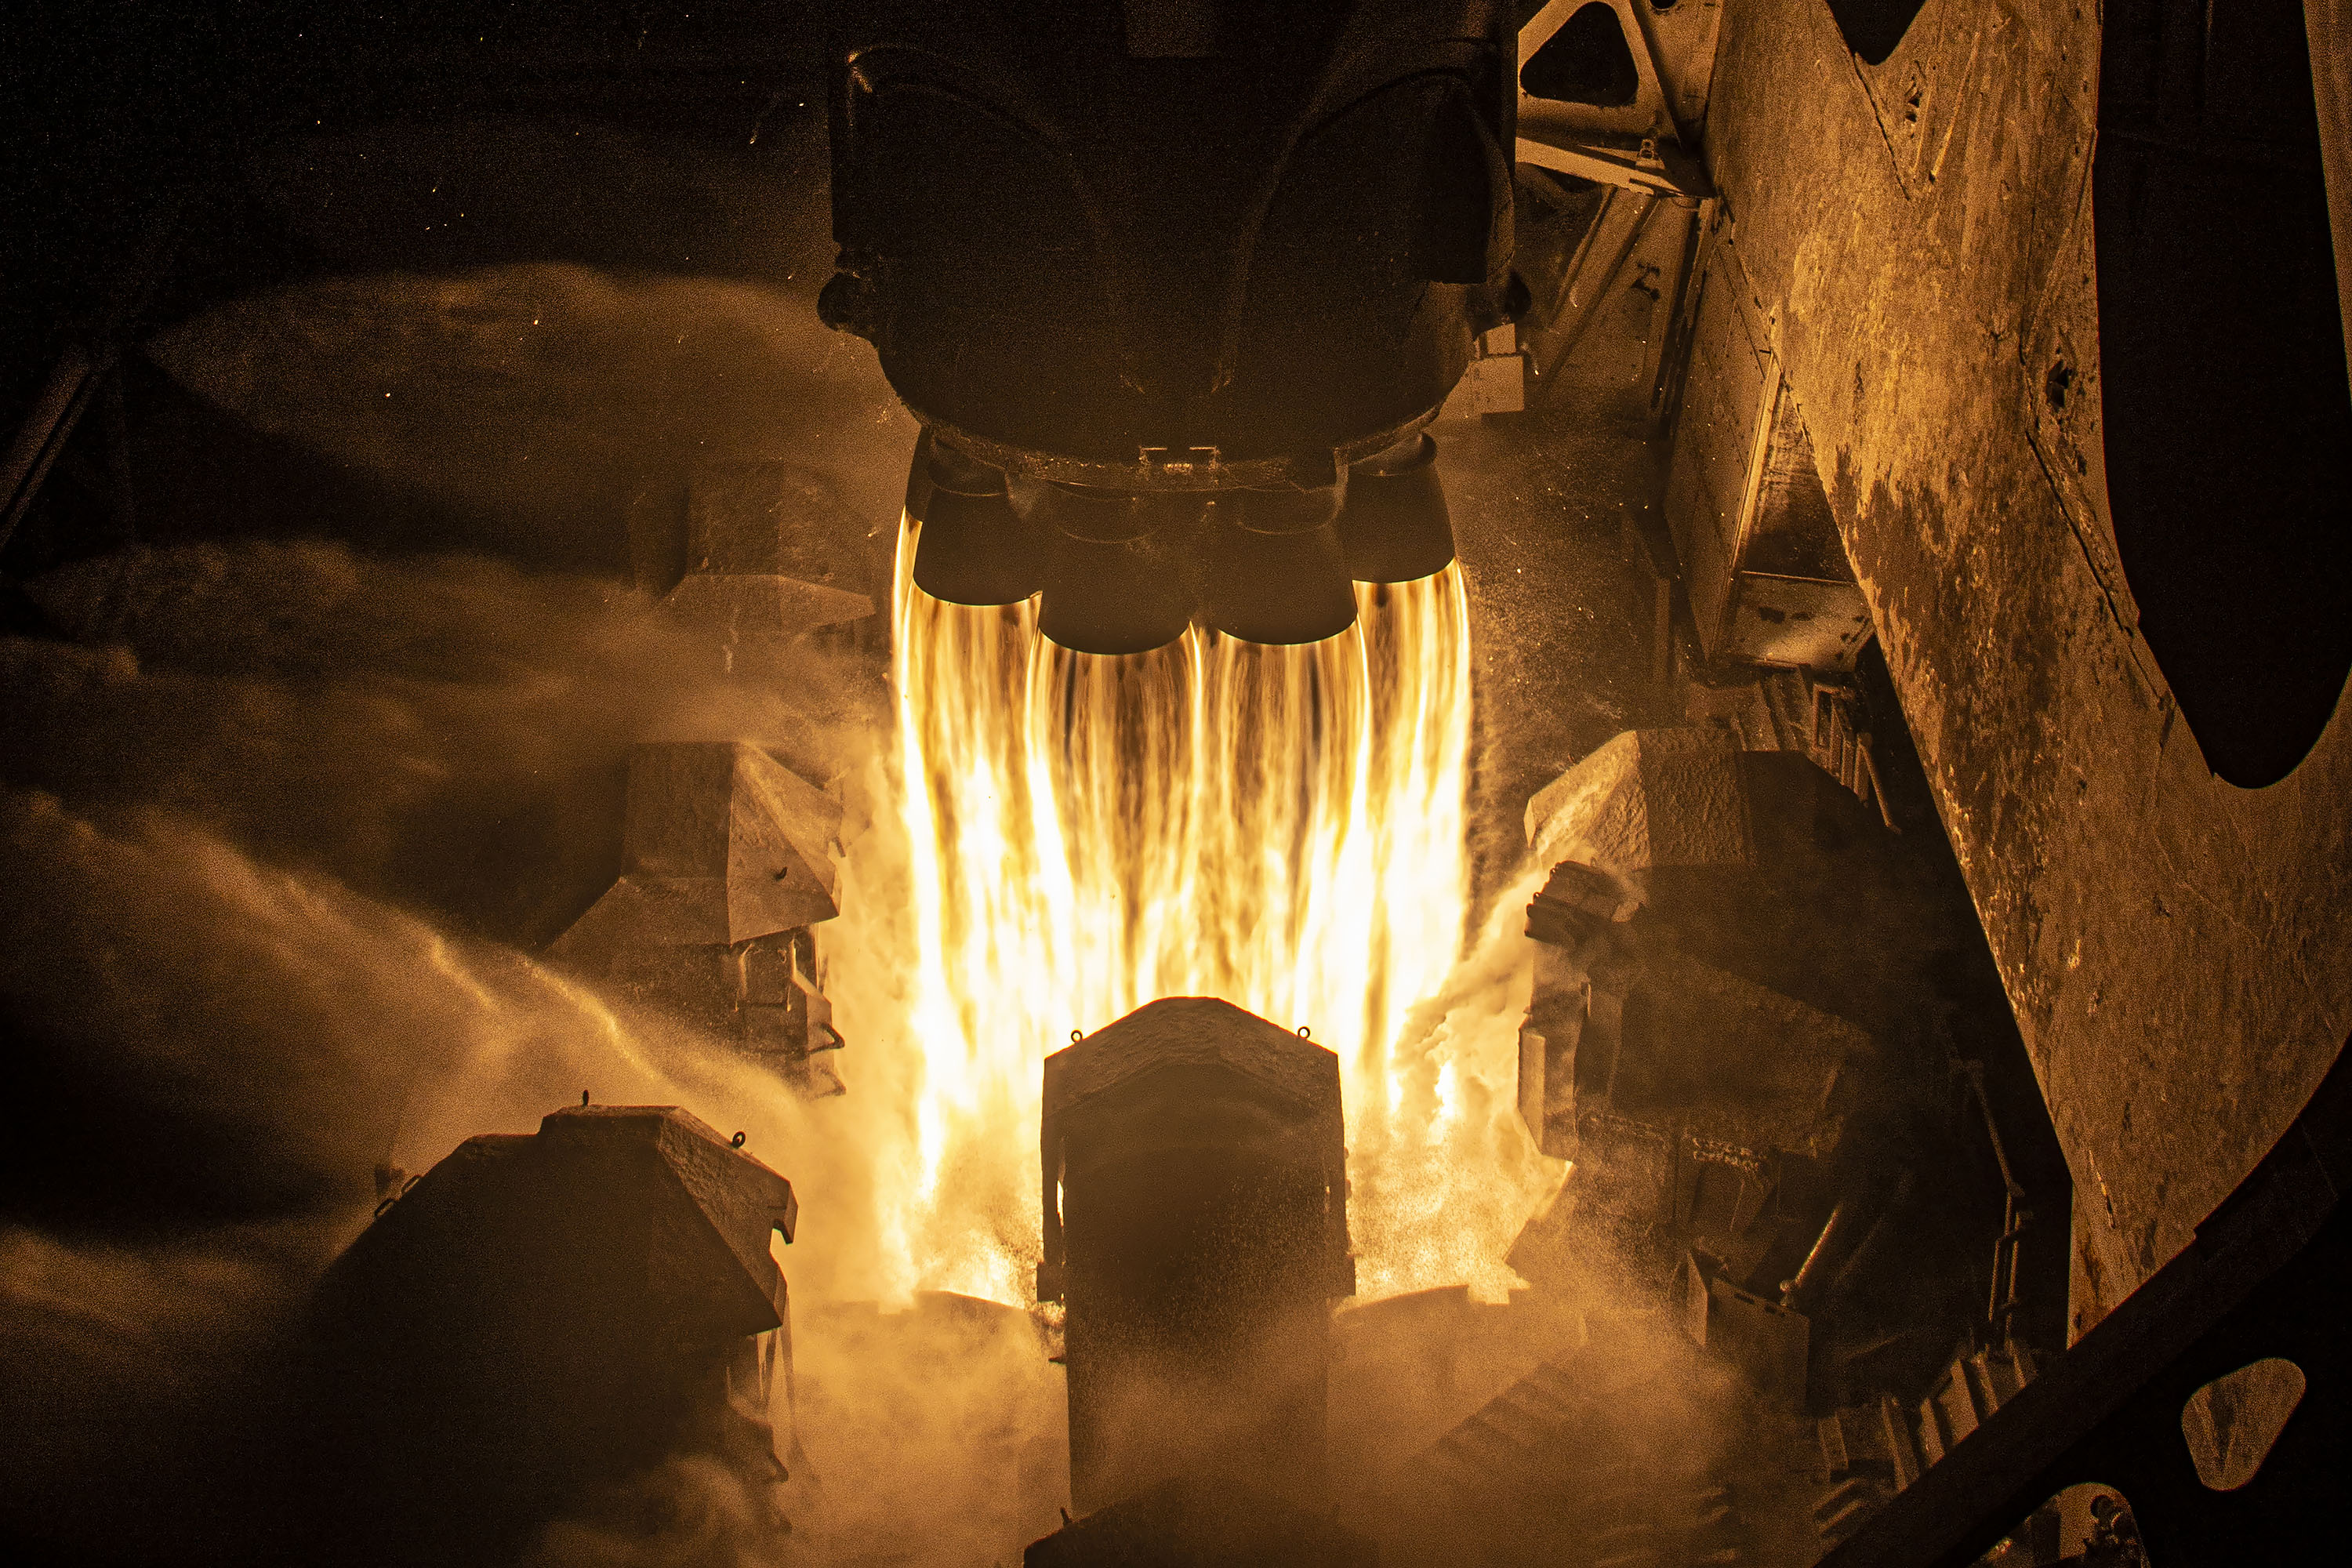 Agua y fuego, choque de elementos opuestos al despegar el Falcon 9 llevando la misión Crew-6